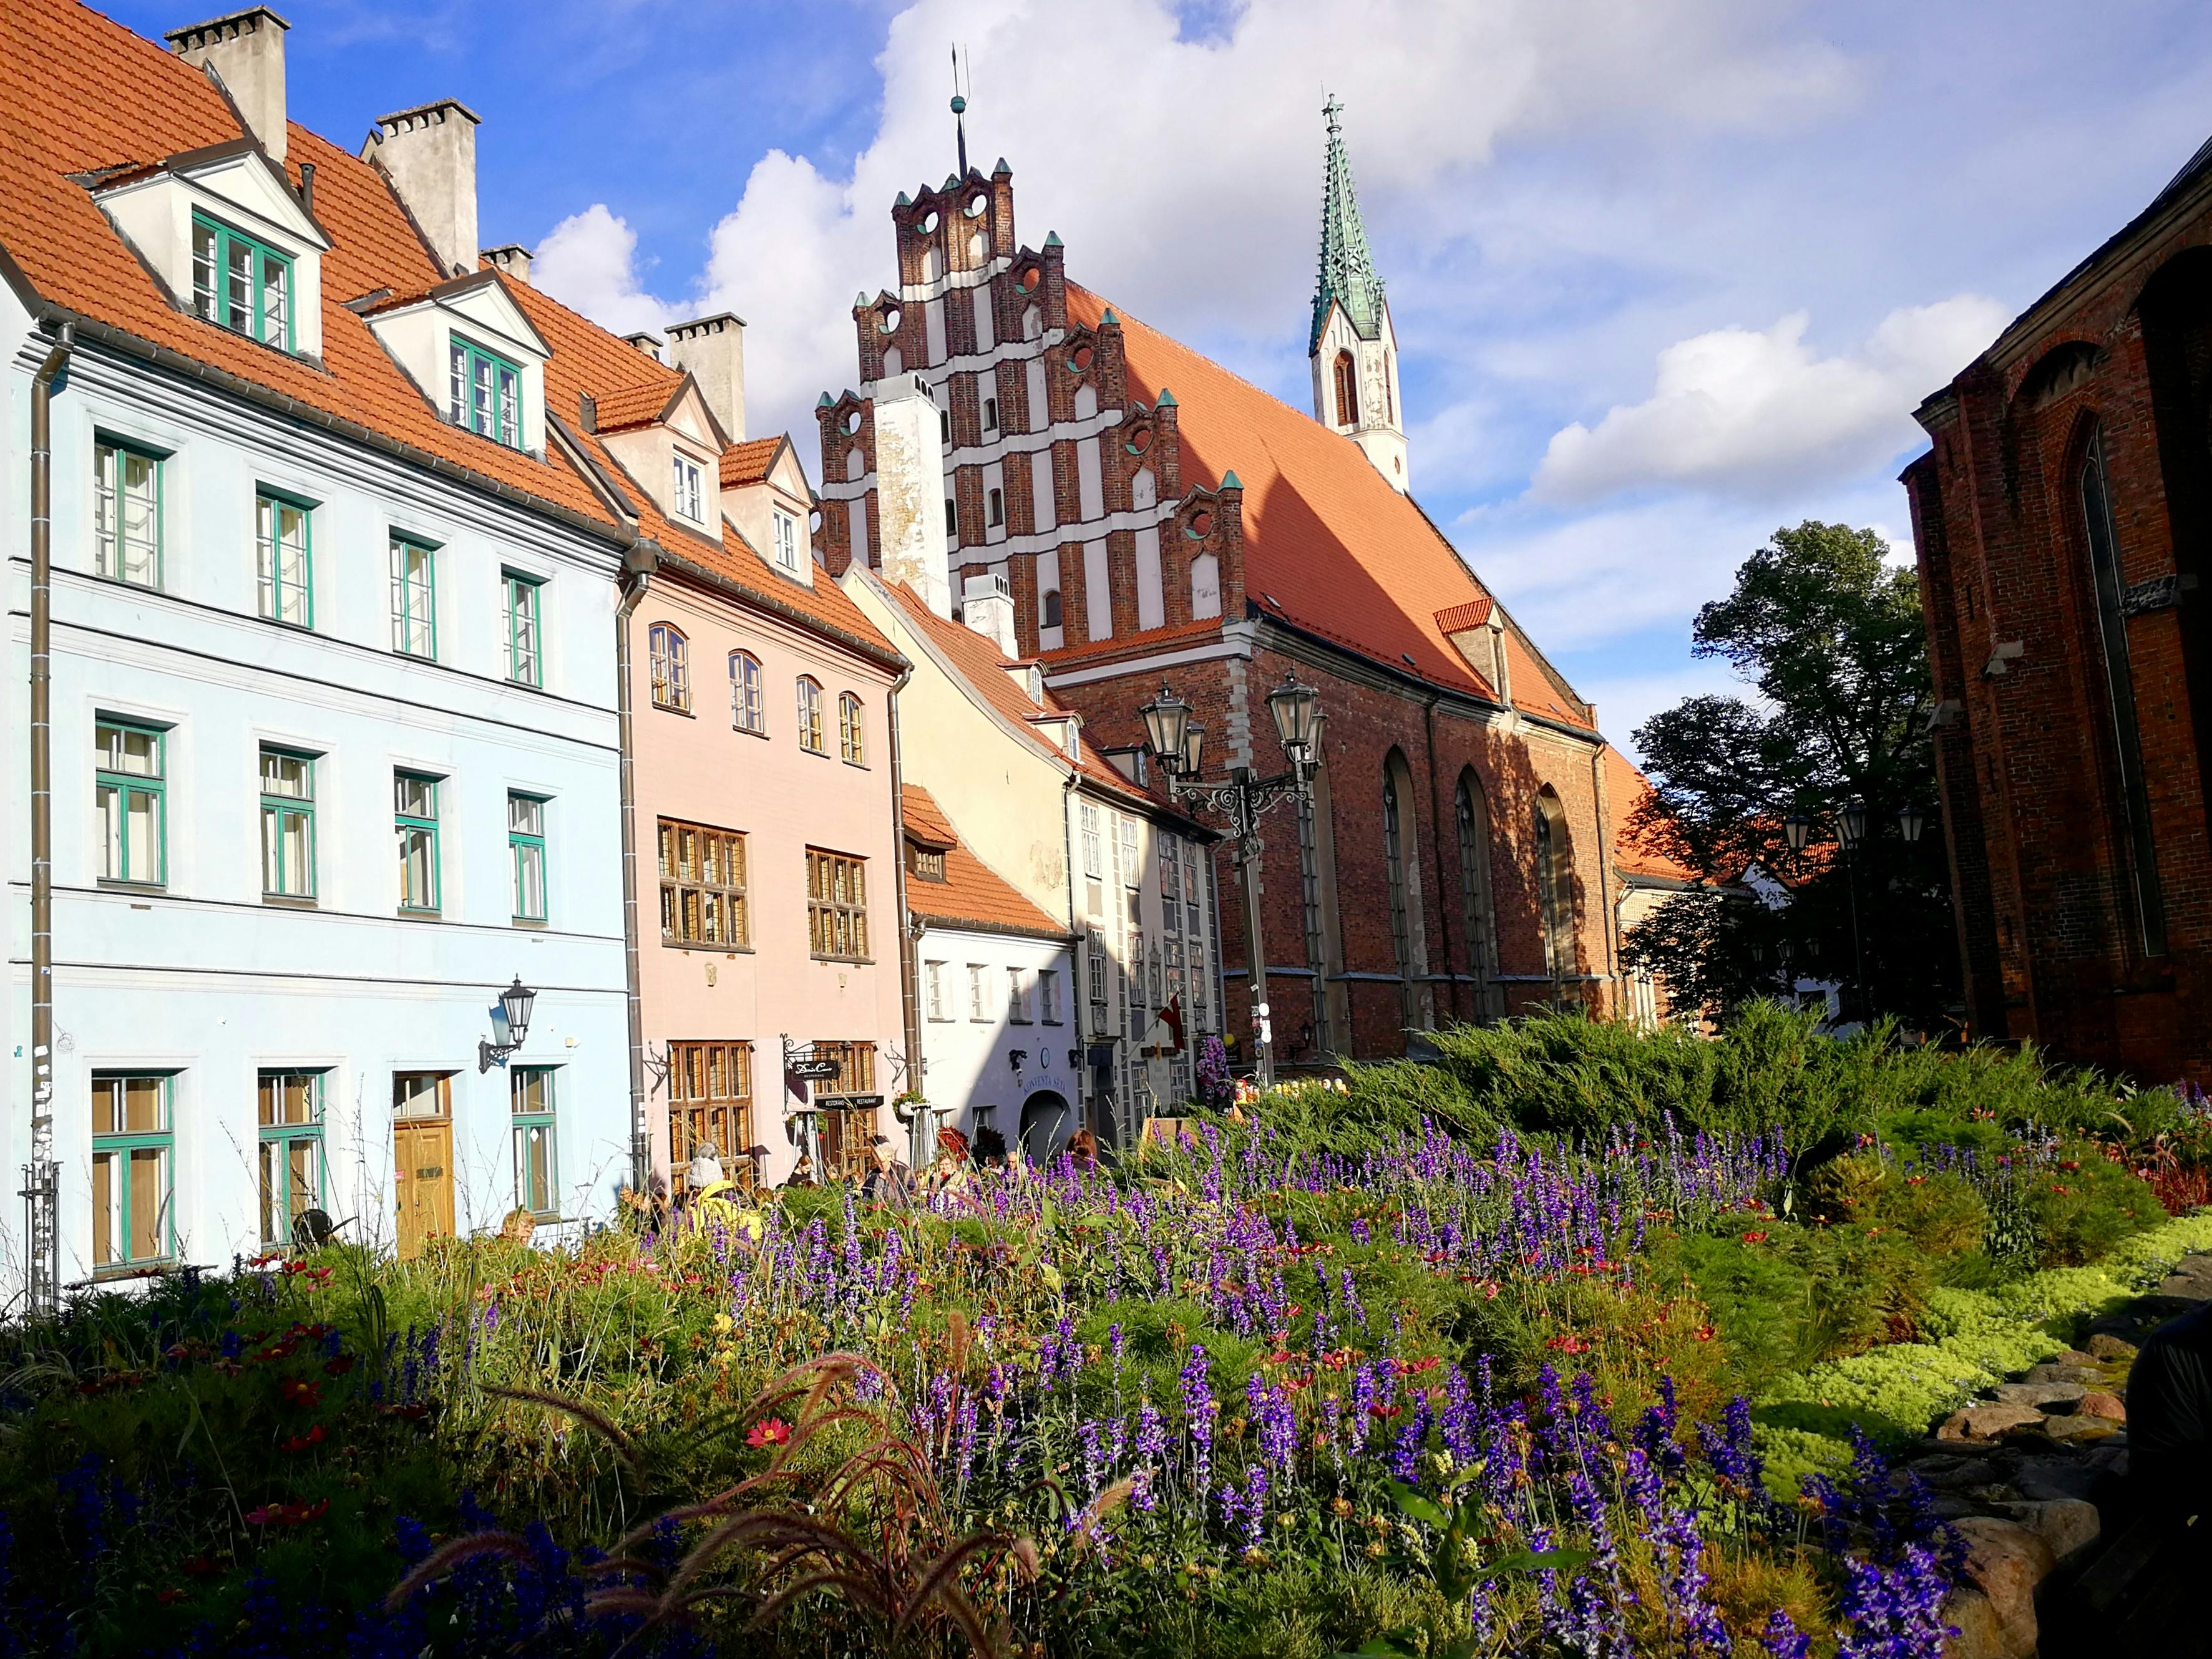 Passeggiata alla scoperta autoguidata di Riga: il centro storico essenziale e i suoi segreti